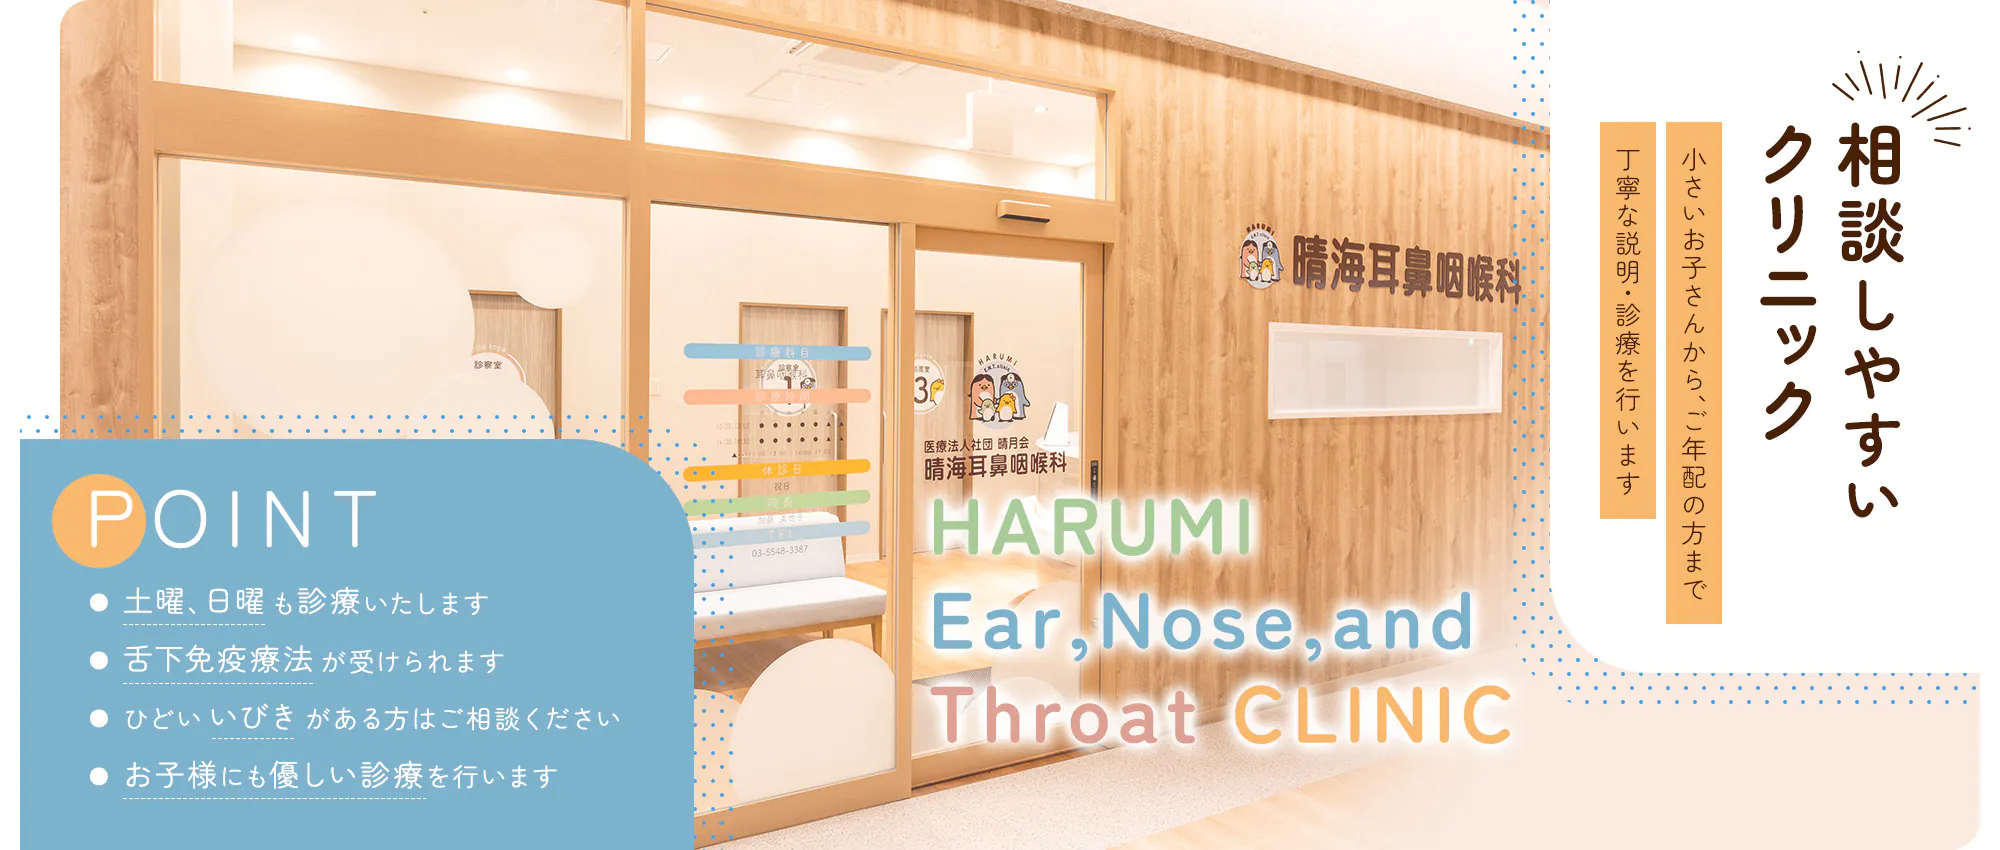 相談しやすい クリニック HARUMI Ear,Nose,and Throat CLINIC